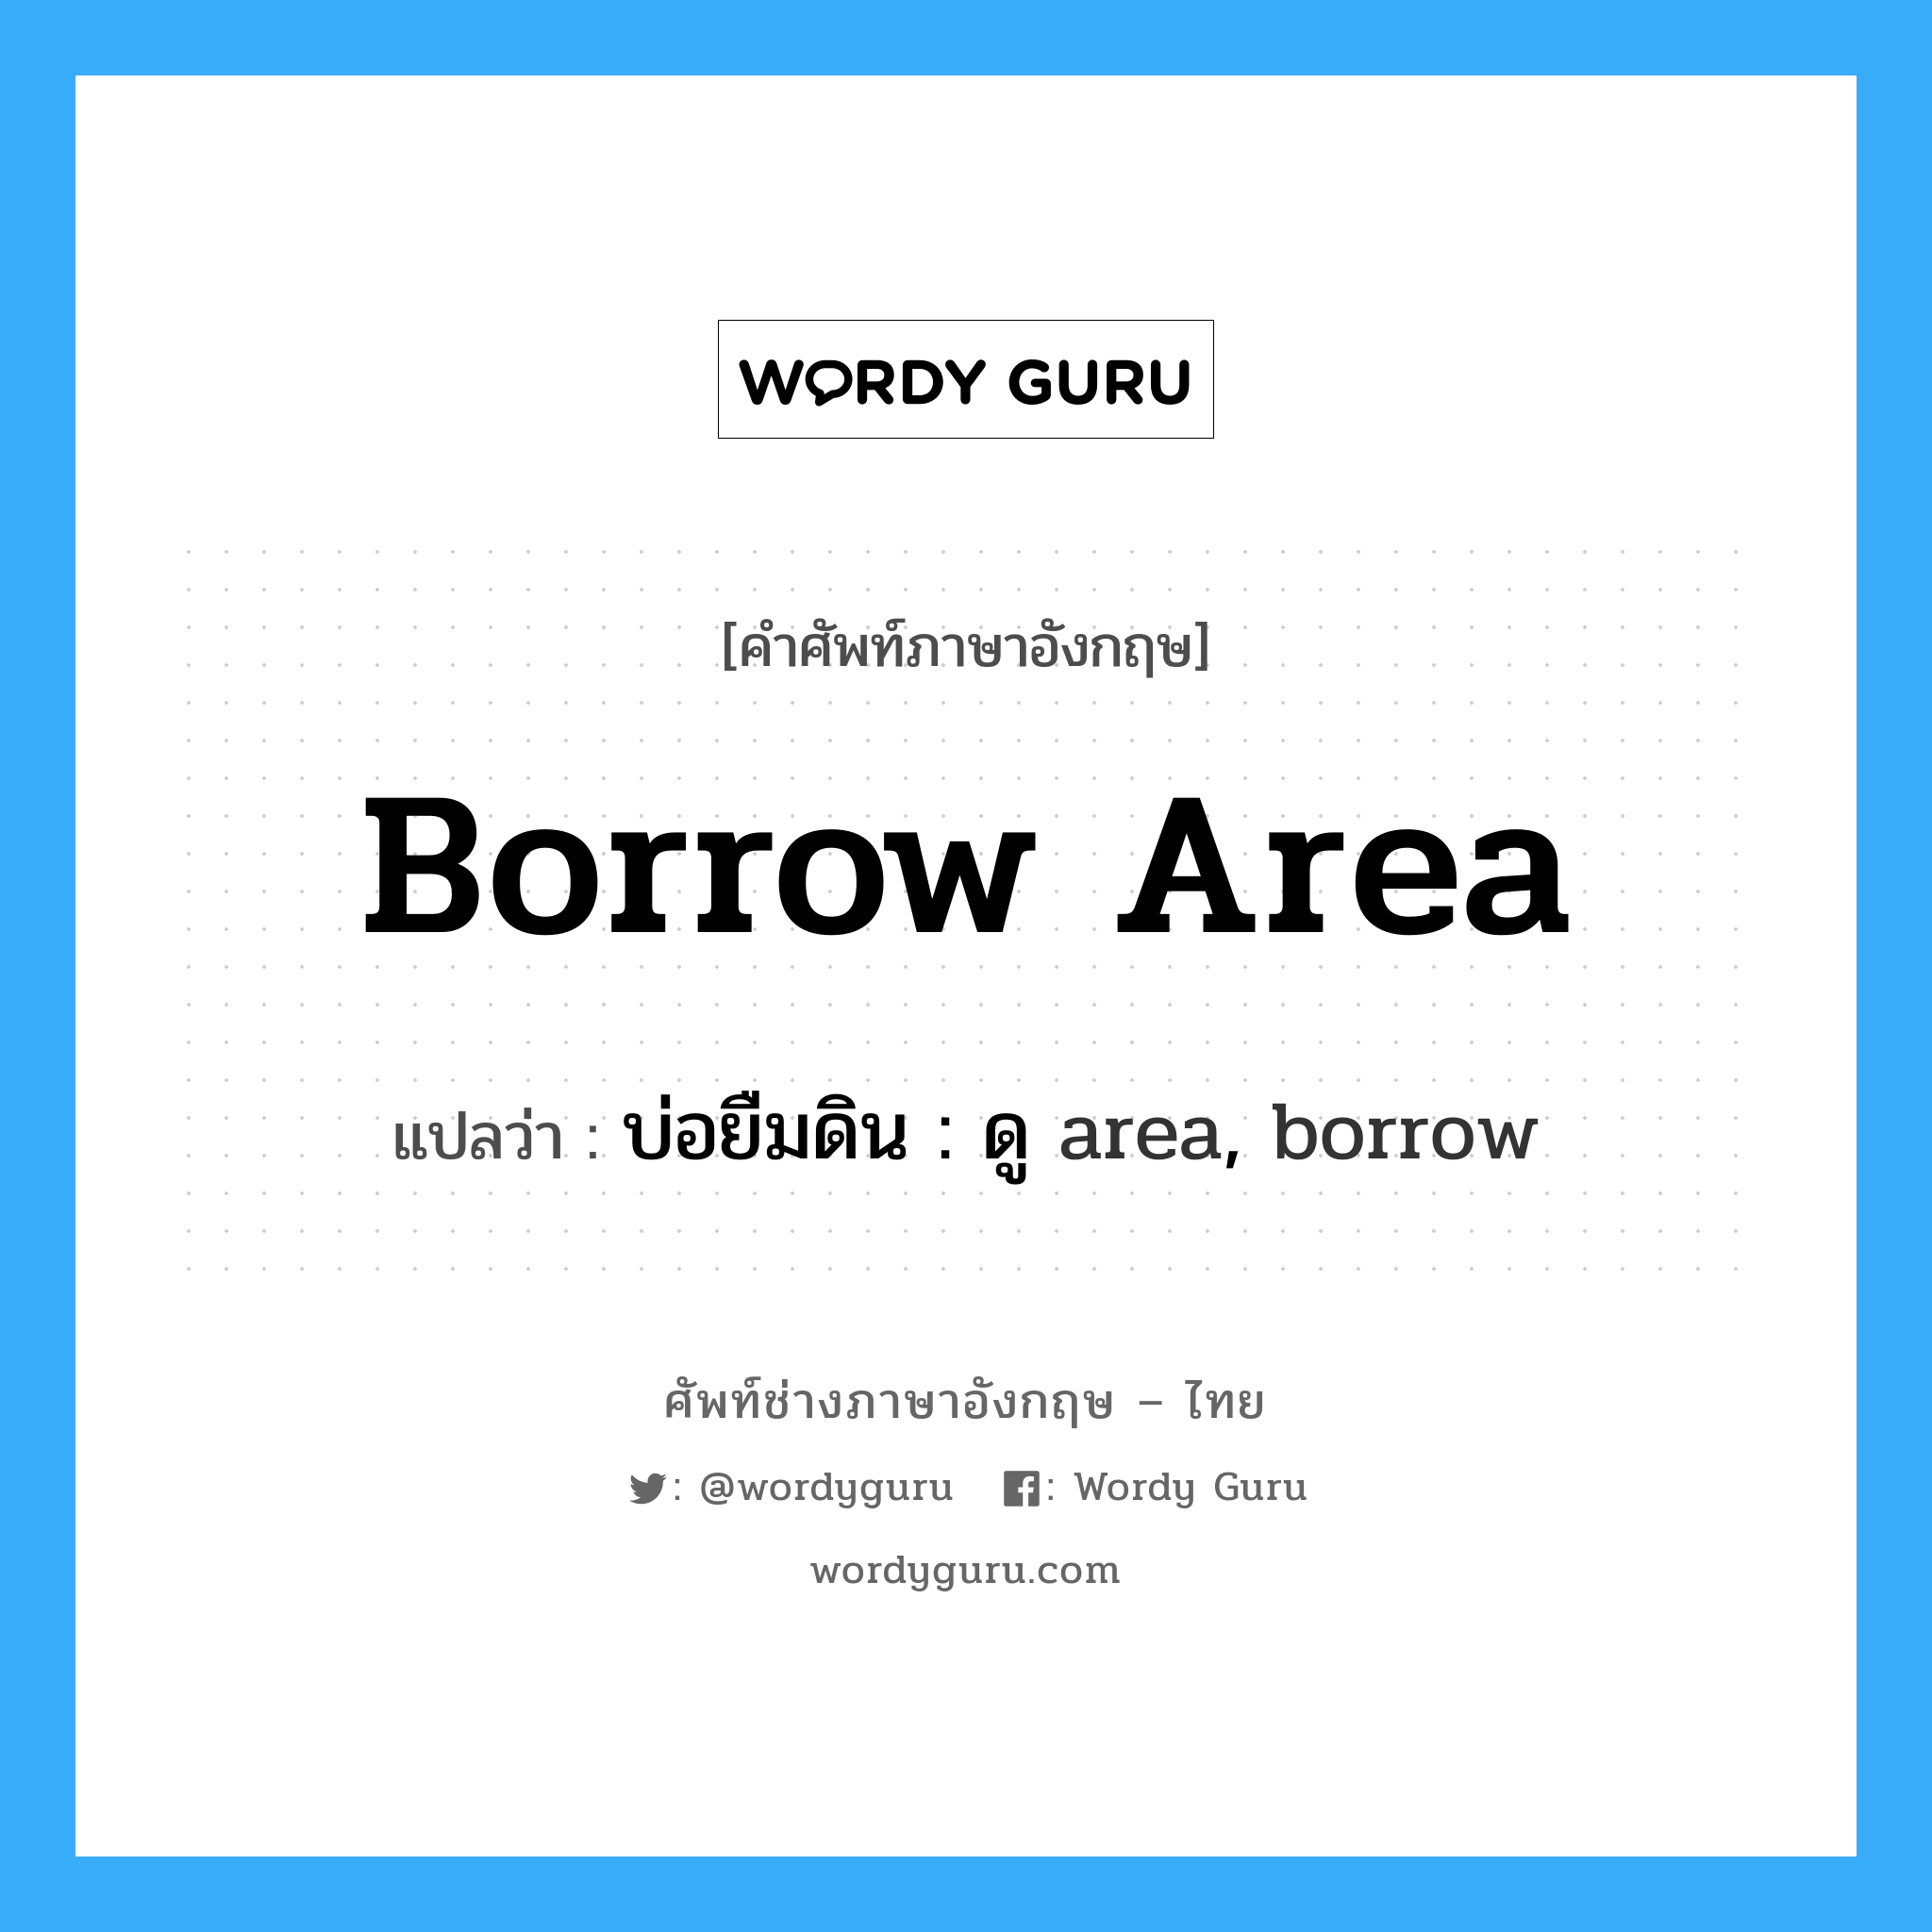 บ่อยืมดิน : ดู area, borrow ภาษาอังกฤษ?, คำศัพท์ช่างภาษาอังกฤษ - ไทย บ่อยืมดิน : ดู area, borrow คำศัพท์ภาษาอังกฤษ บ่อยืมดิน : ดู area, borrow แปลว่า borrow area